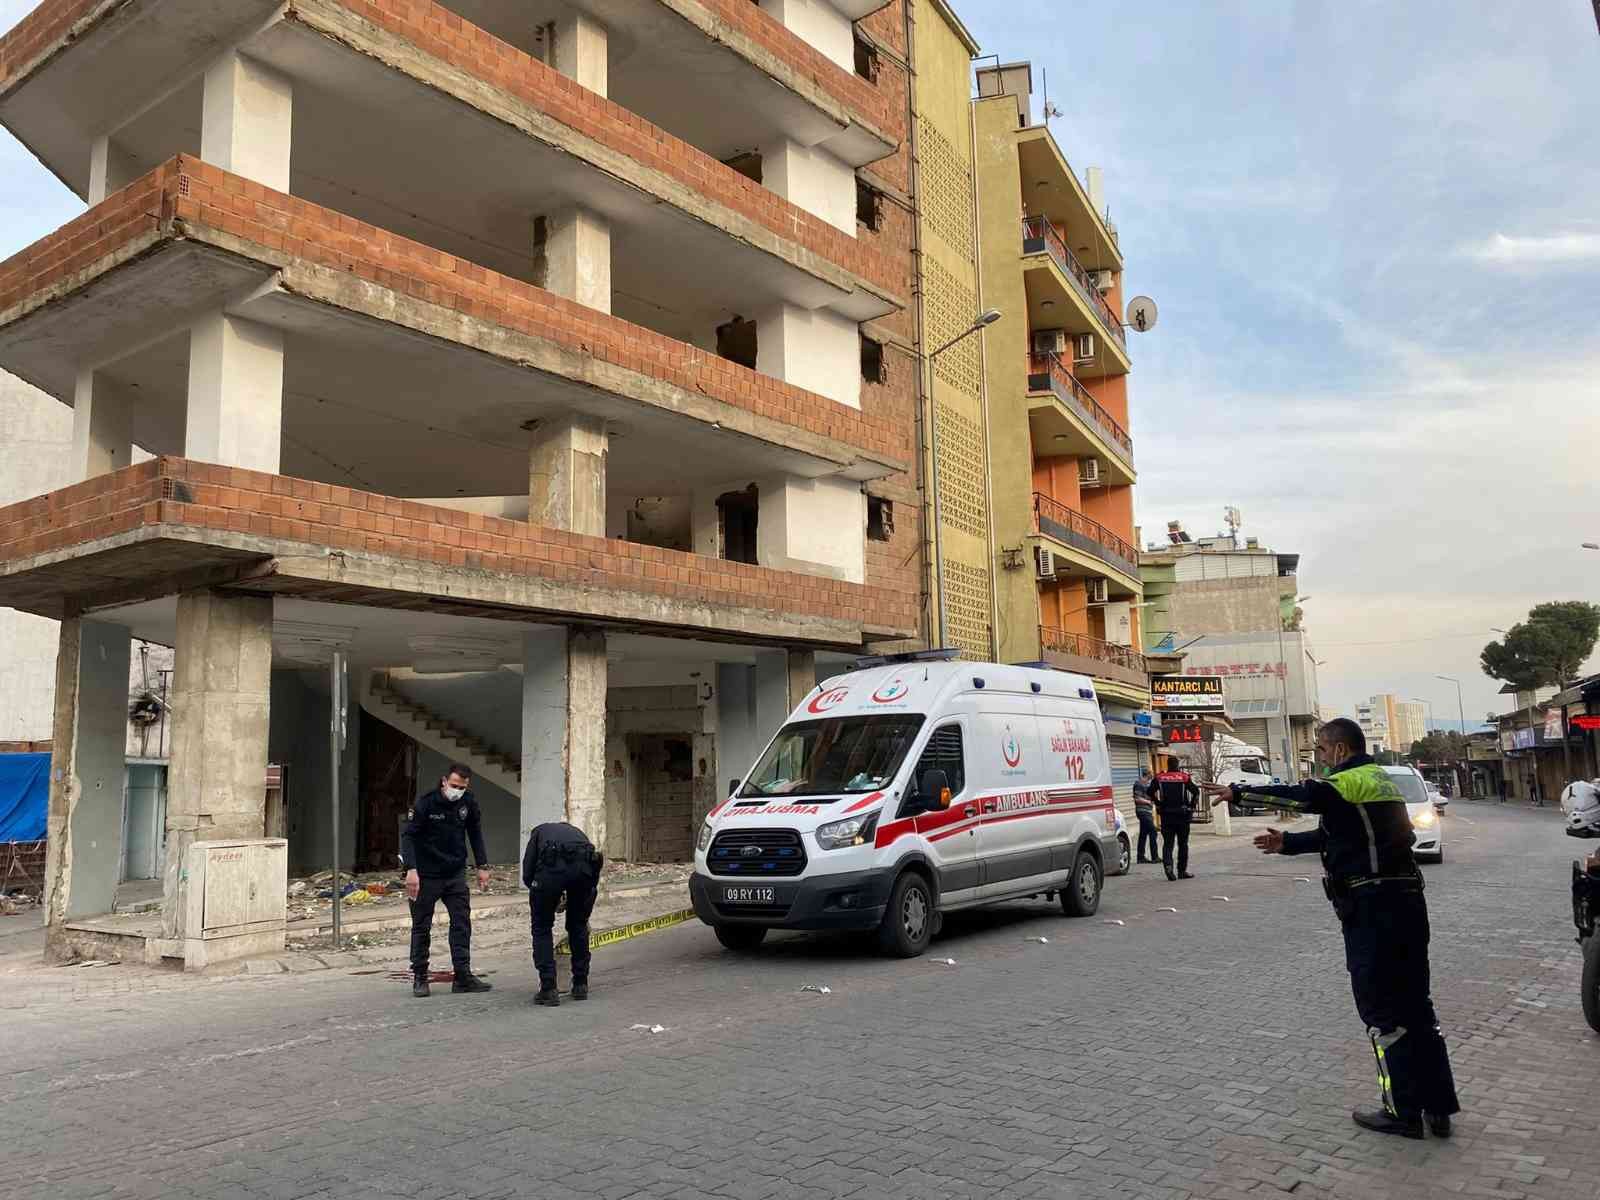 Aydın’da inşaat halindeki binadan yola düşen bir kişi ağır yaralandı #aydin